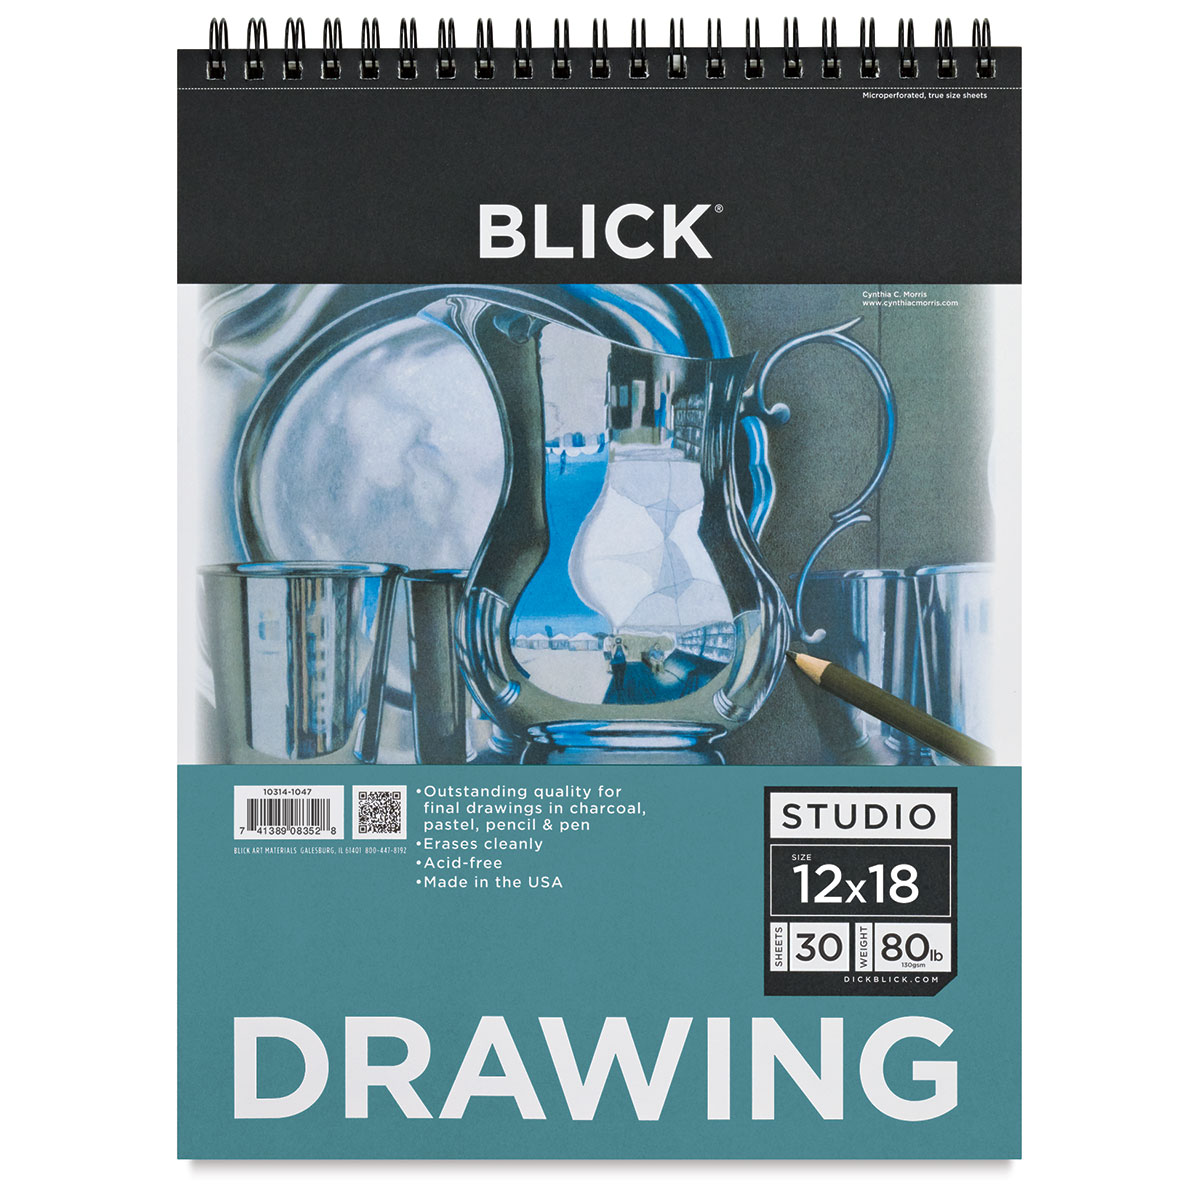 Blick Studio Drawing Pads